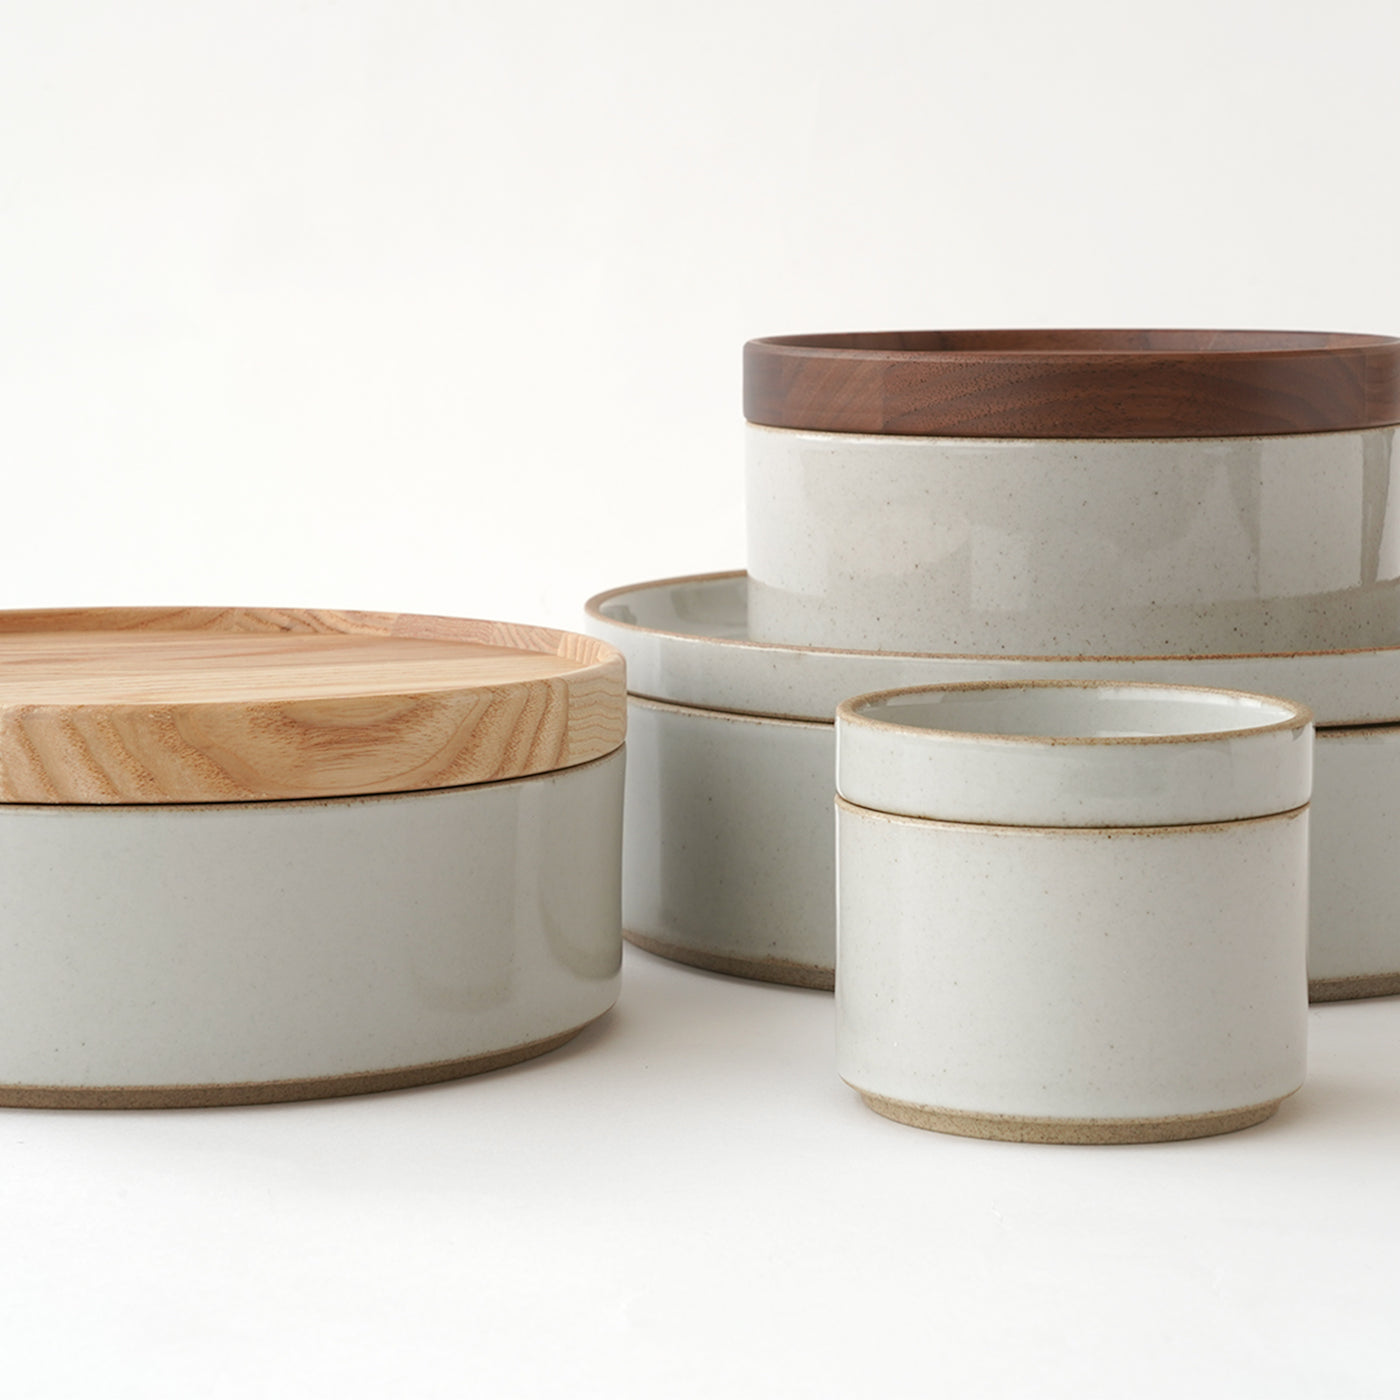 Hasami Porcelain Bowl 5 5/8" Gloss Gray